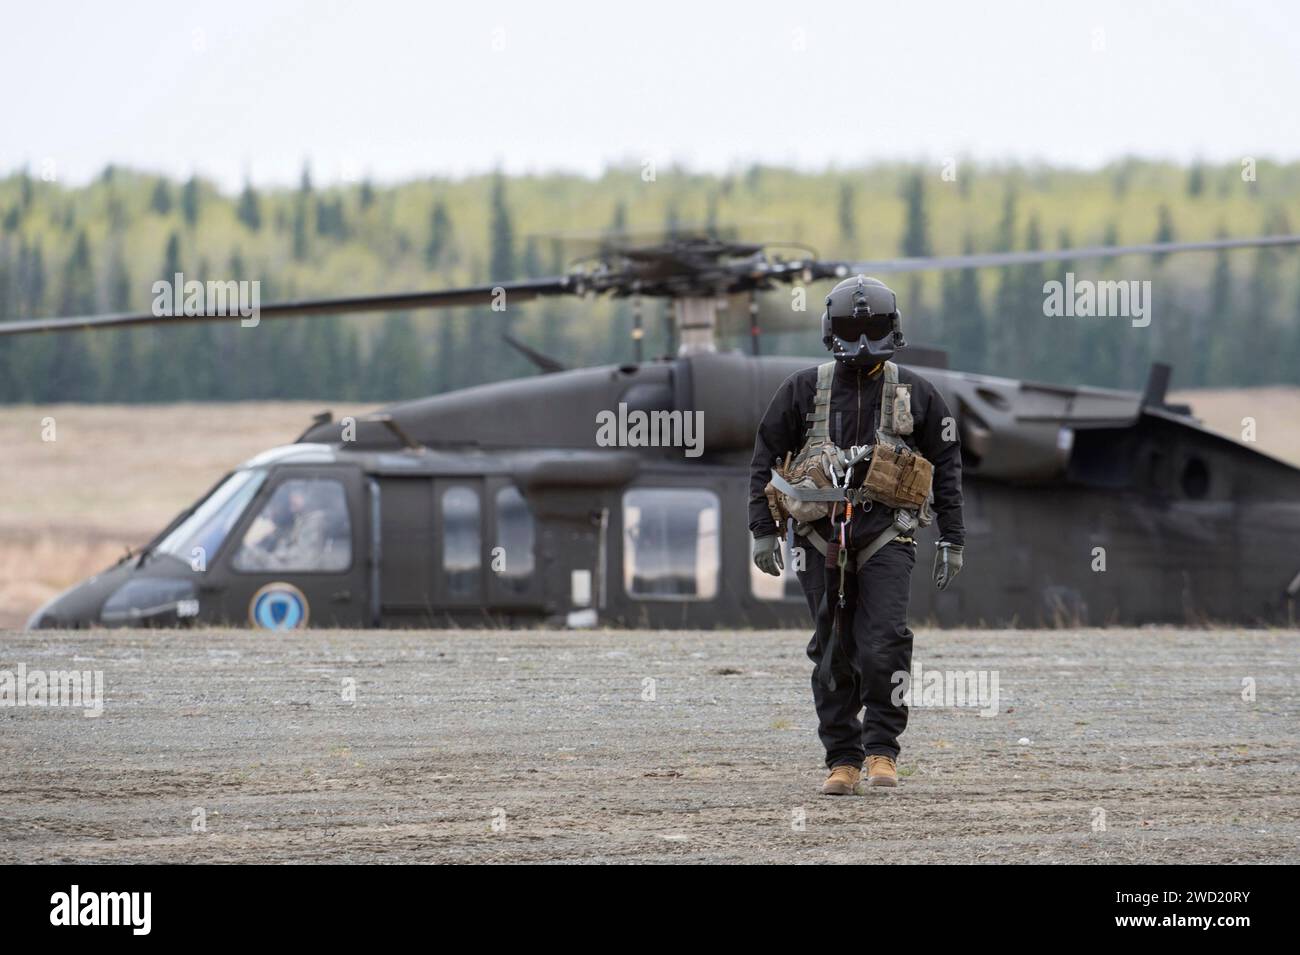 Un chef d'équipage d'hélicoptère UH-60 Black Hawk de l'armée américaine approche du personnel de champ. Banque D'Images